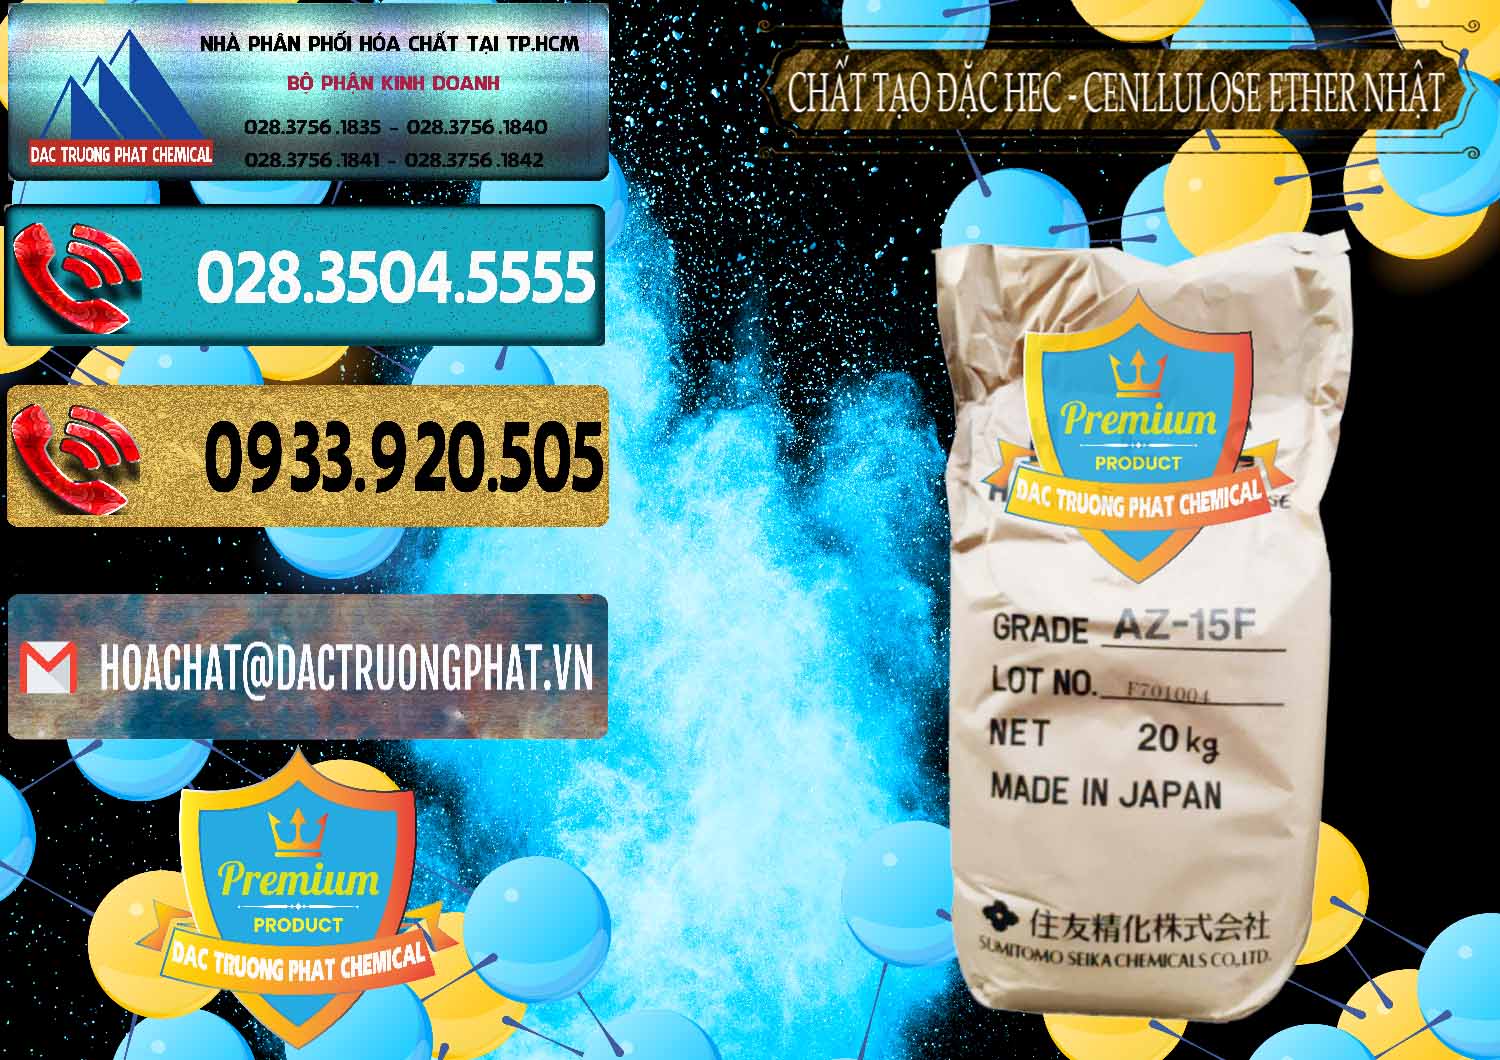 Công ty kinh doanh & bán Chất Tạo Đặc Hec Mecellose – Cenllulose Ether Nhật Bản Japan - 0367 - Cty phân phối & kinh doanh hóa chất tại TP.HCM - hoachatdetnhuom.com